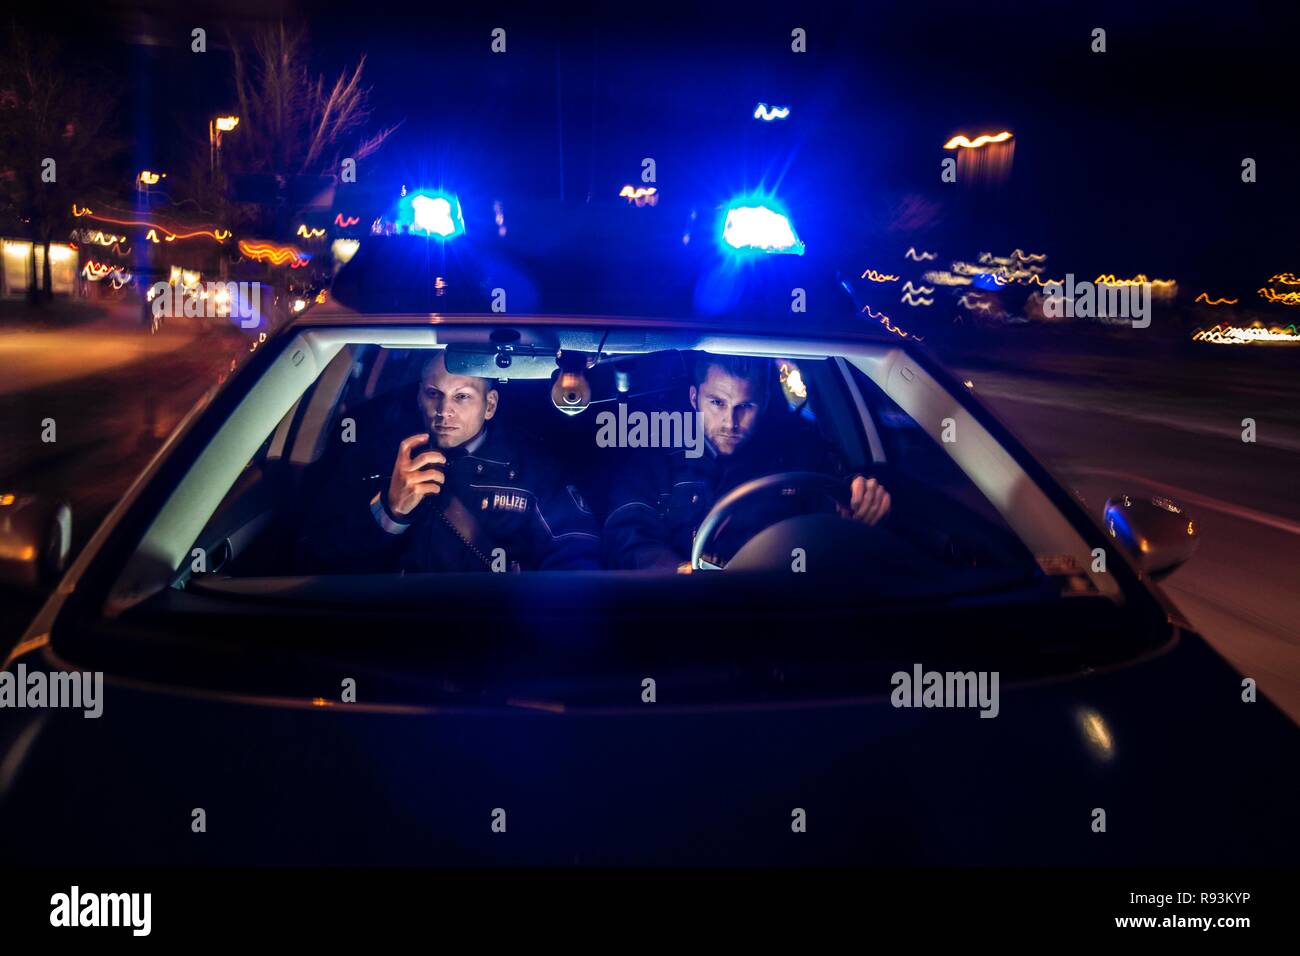 Polizeisirenen in Betrieb. Blau und Rot blinken Lichter von Not Auto in  Aktion. Polizei Crew mit der Sirene Lichter auf Not aufmerksam  Stockfotografie - Alamy